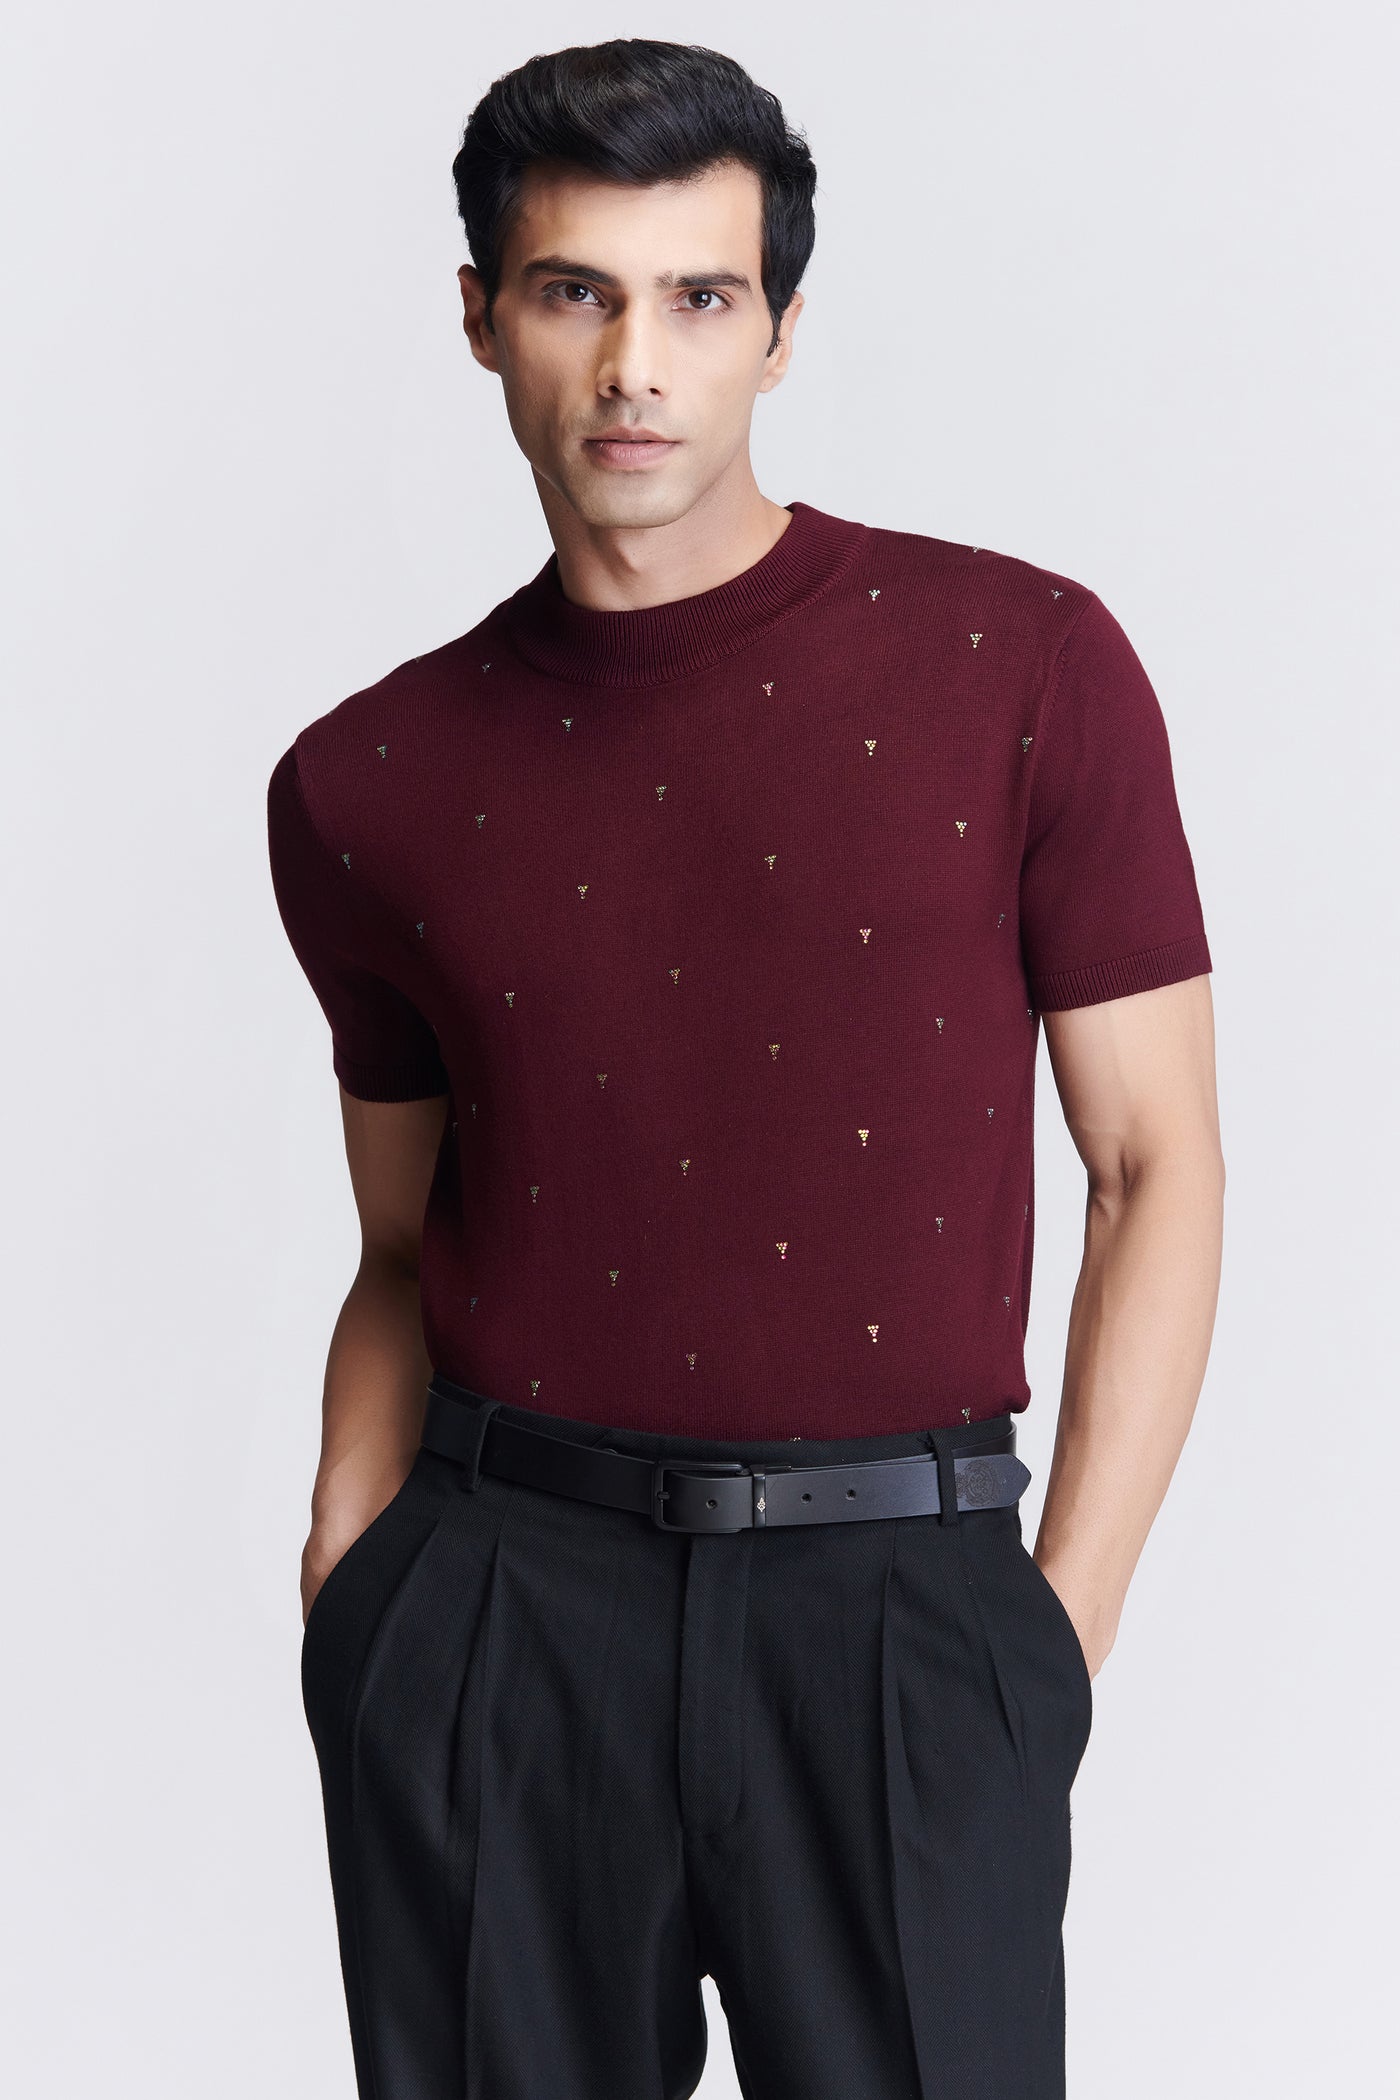 Shantanu & Nikhil Menswear Plum Knit T-Shirt indian designer wear online shopping melange singapore